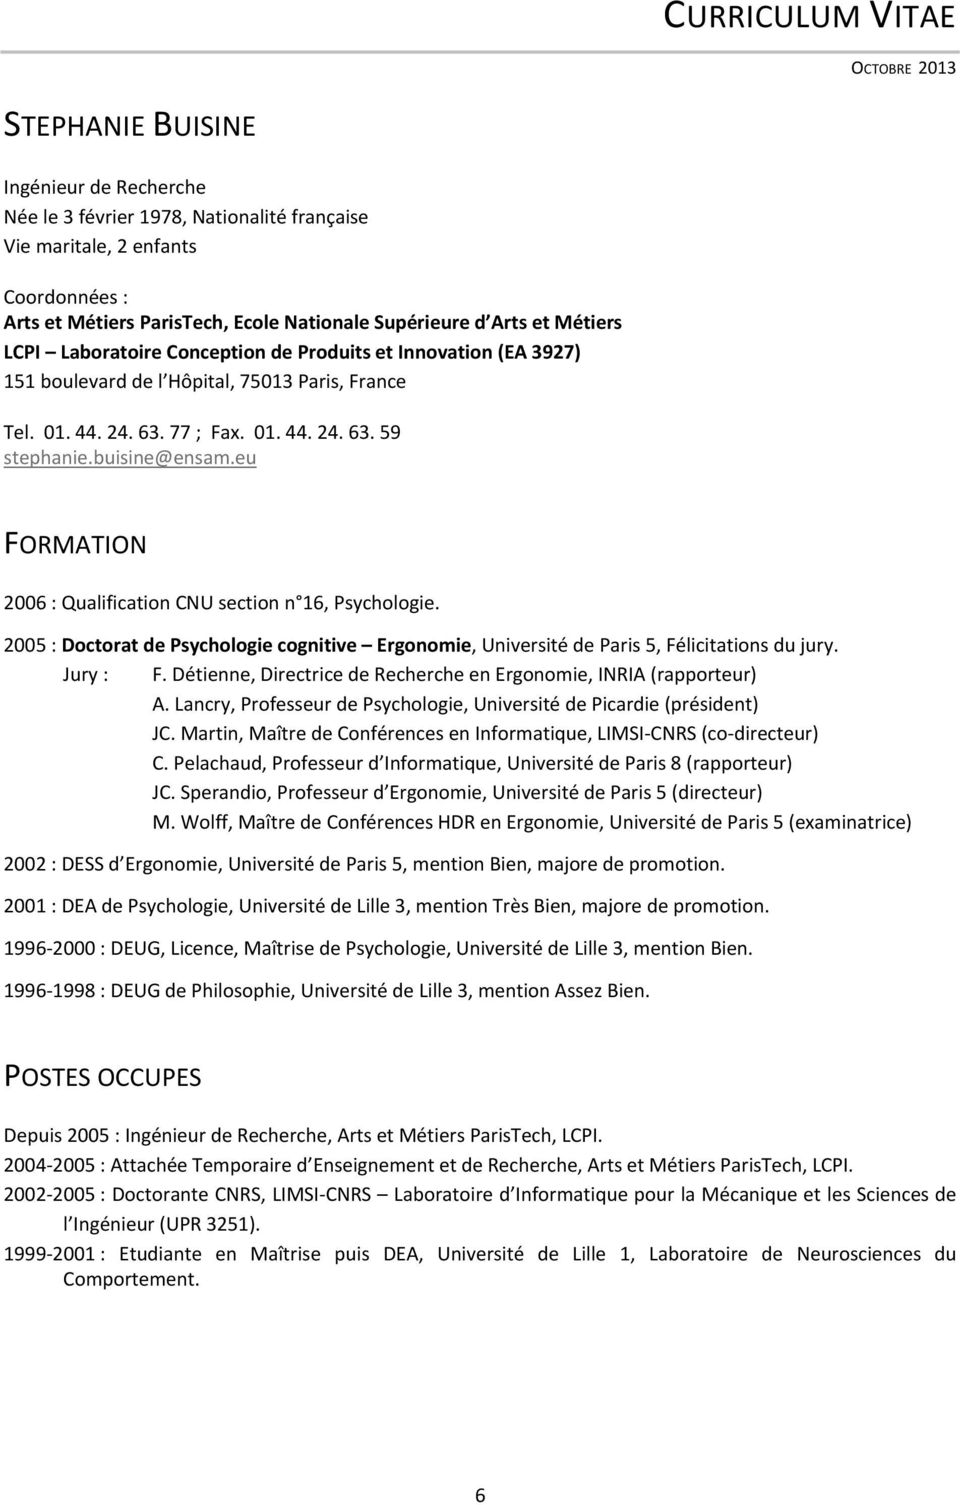 buisine@ensam.eu FORMATION 2006 : Qualification CNU section n 16, Psychologie. 2005 : Doctorat de Psychologie cognitive Ergonomie, Université de Paris 5, Félicitations du jury. Jury : F.